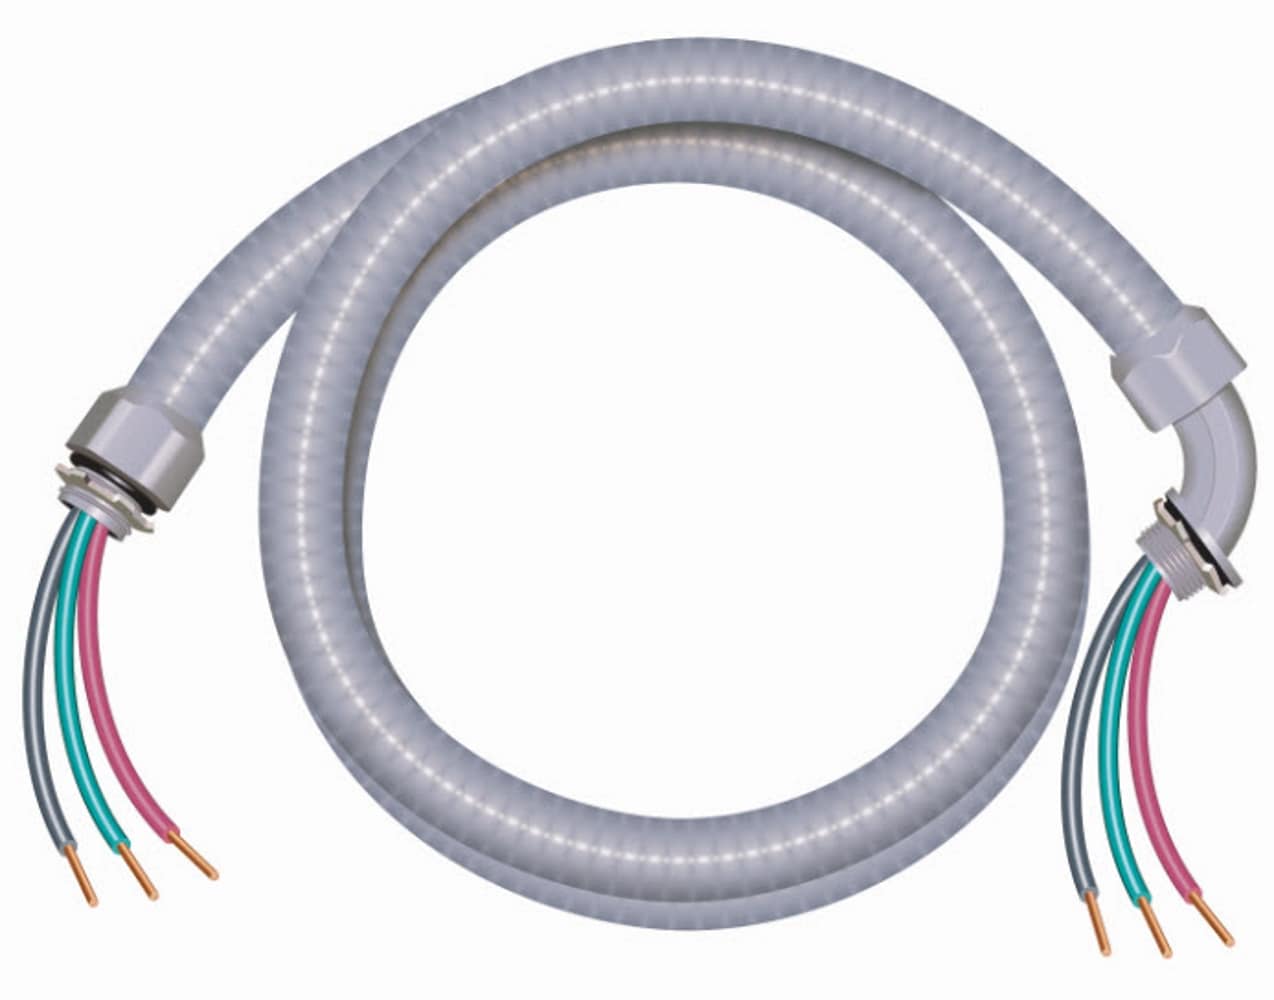 TQ 10 Gauge Wire – BL 3 Wire Kit